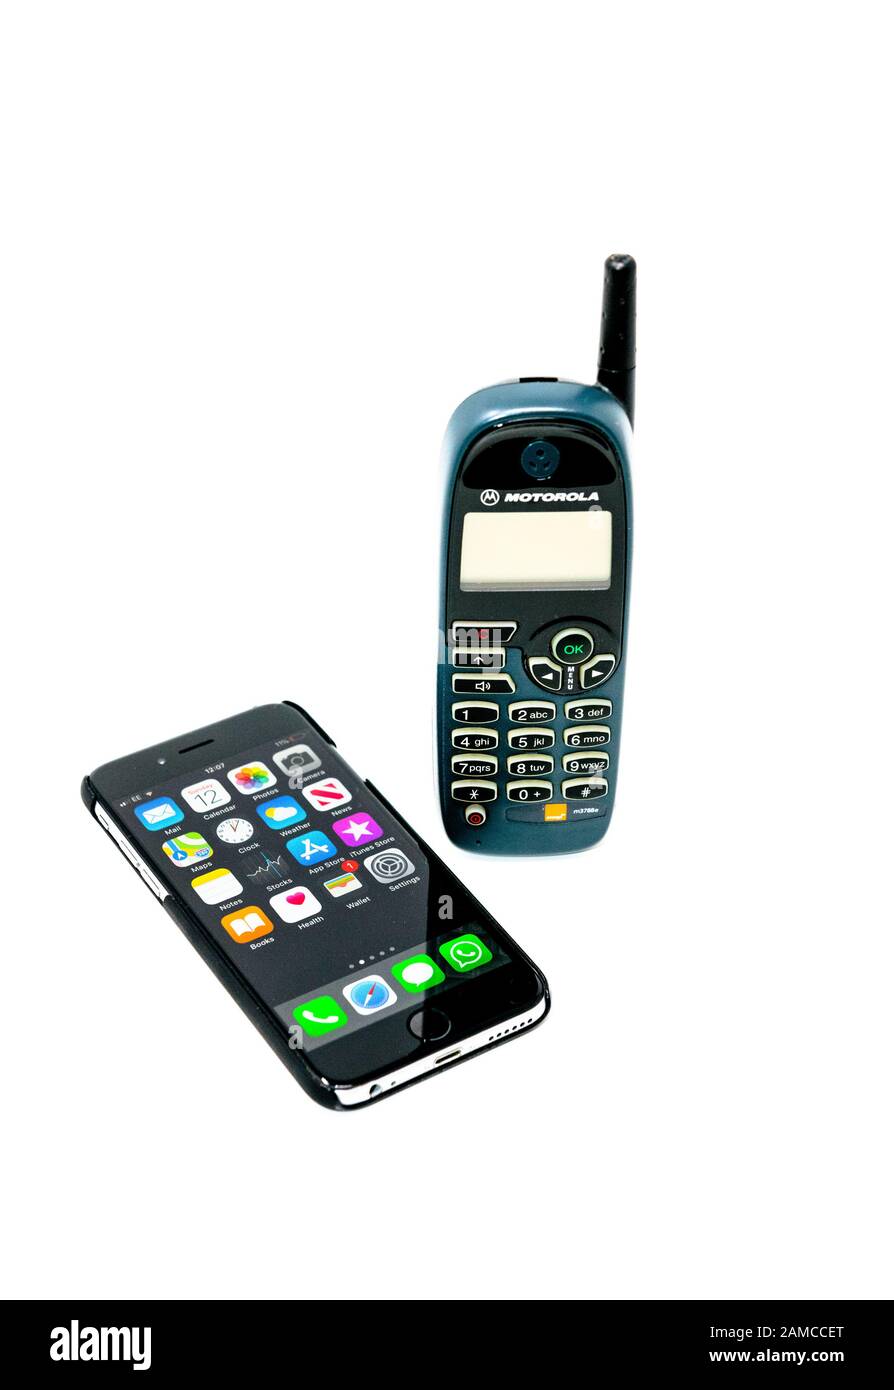 Telefono cellulare Motorola M3788e con smartphone Apple iphone 6. Foto Stock